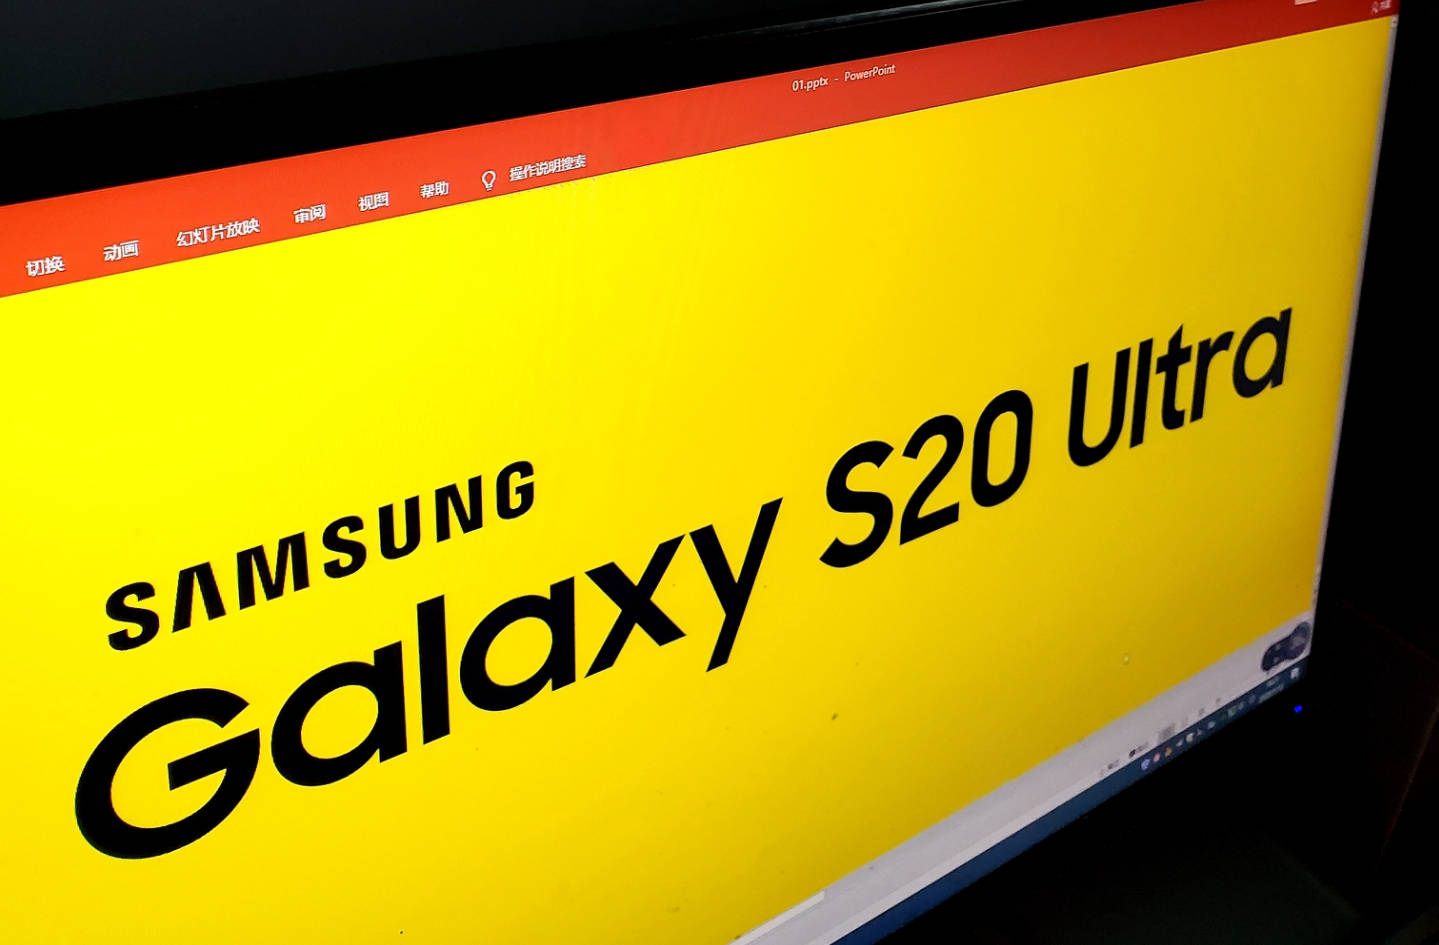 Samsung Galaxy S20 Ultra logo kiedy premiera plotki przecieki wycieki specyfikacja dane techniczne